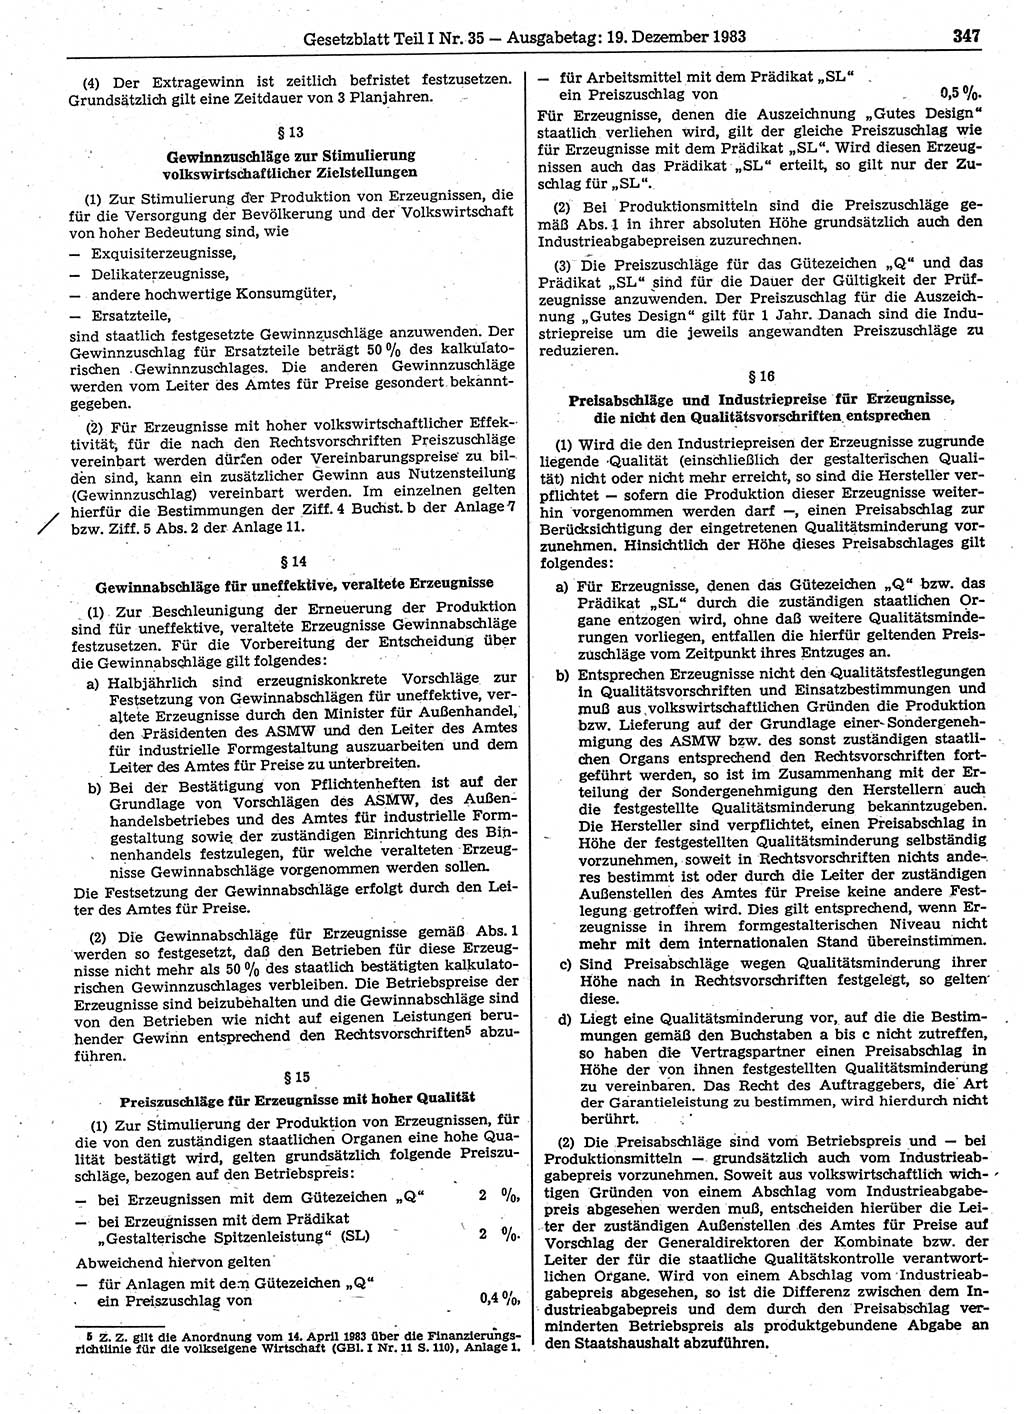 Gesetzblatt (GBl.) der Deutschen Demokratischen Republik (DDR) Teil Ⅰ 1983, Seite 347 (GBl. DDR Ⅰ 1983, S. 347)